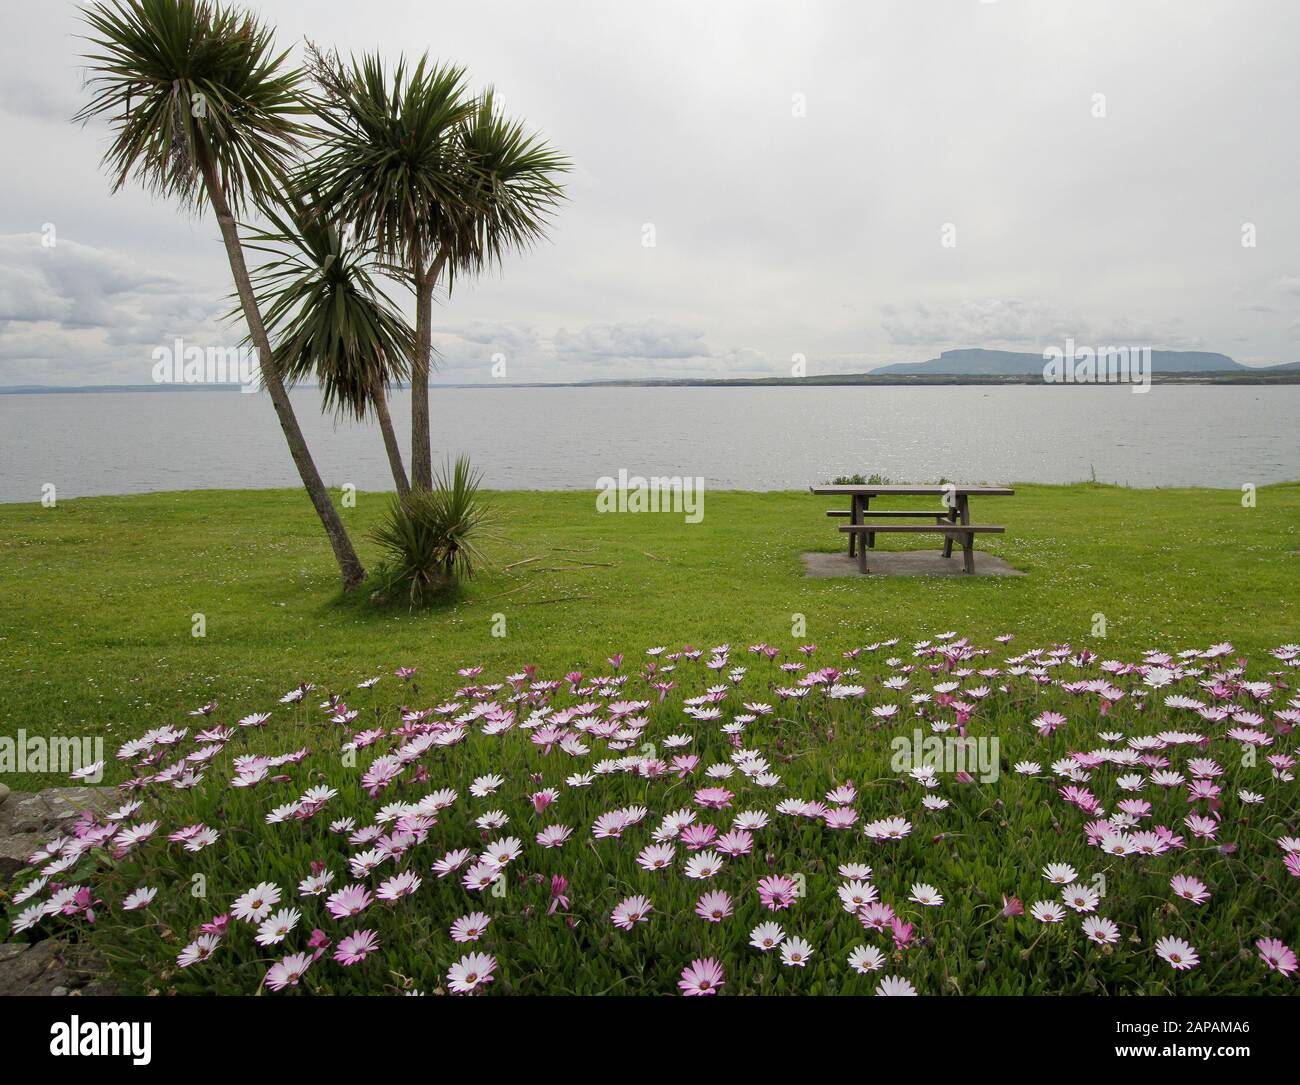 Eine große Menge an kap-gänseblümchen neben Palmen und ein Picknicktisch mit Blick auf das Meer auf einer irischen Landzunge am Mullaghmore Head, County Sligo, Irland. Stockfoto